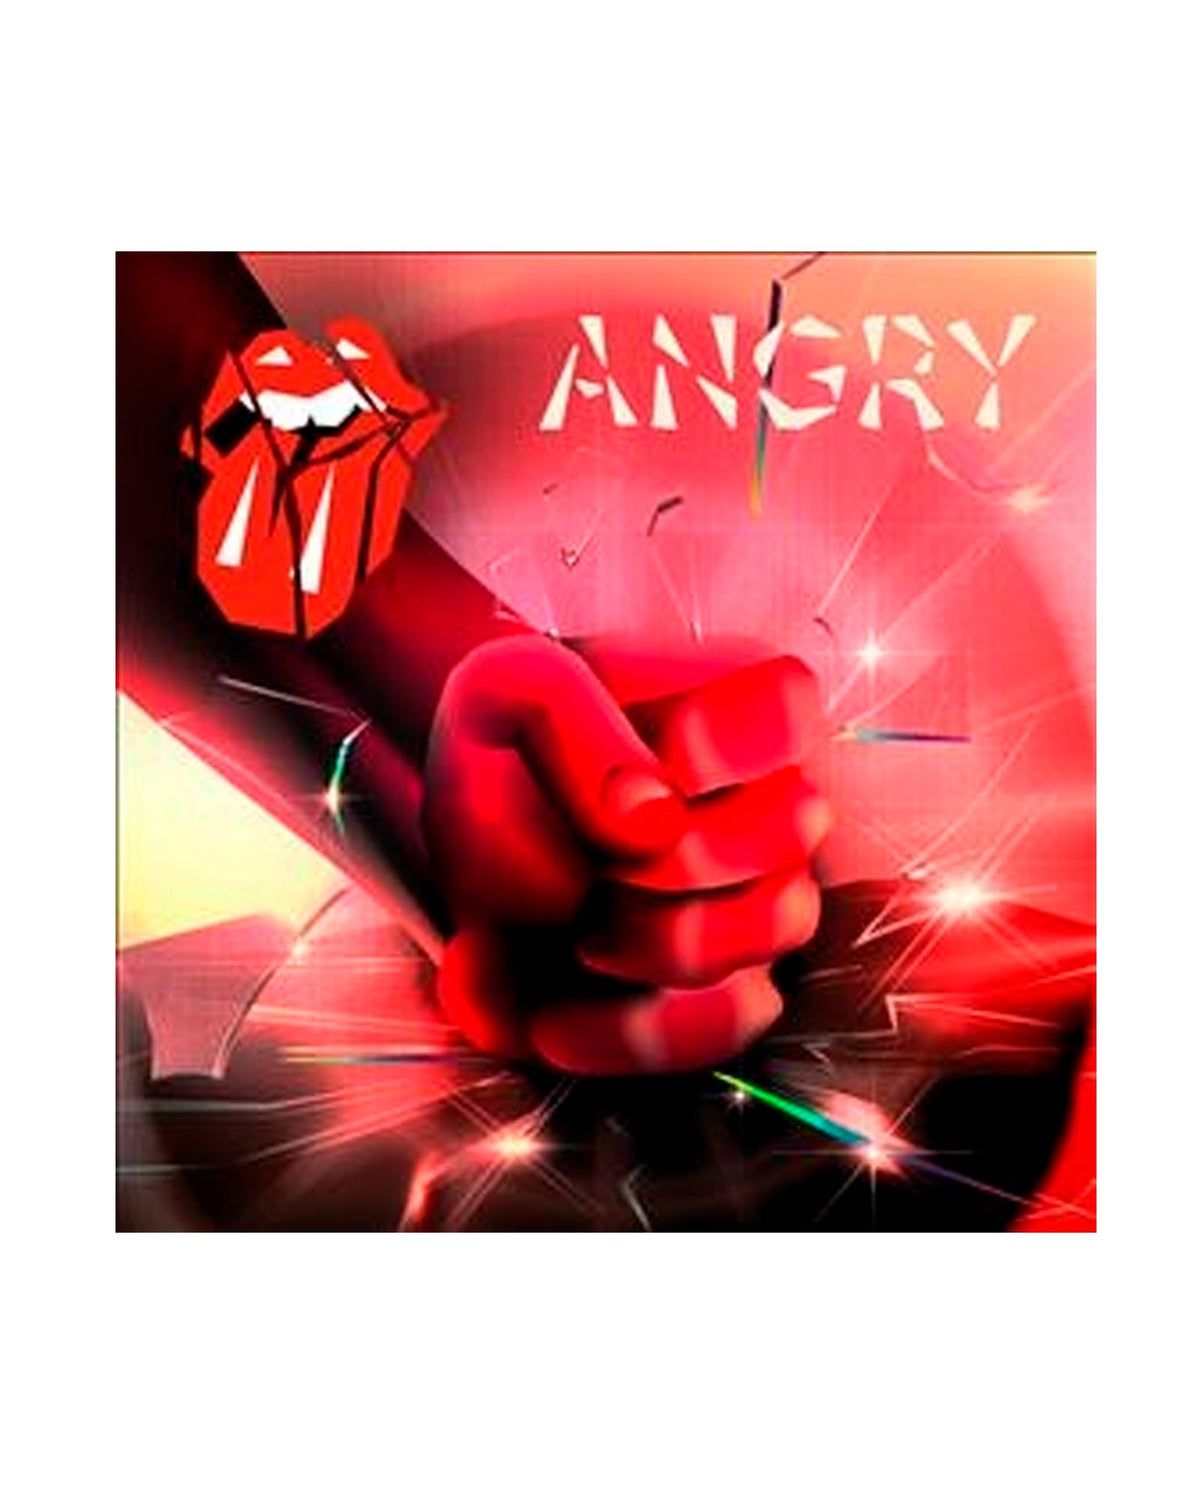 The Rolling Stones - LP Vinilo 10" Single Black "Angry" - D2fy · Rocktud - Rocktud